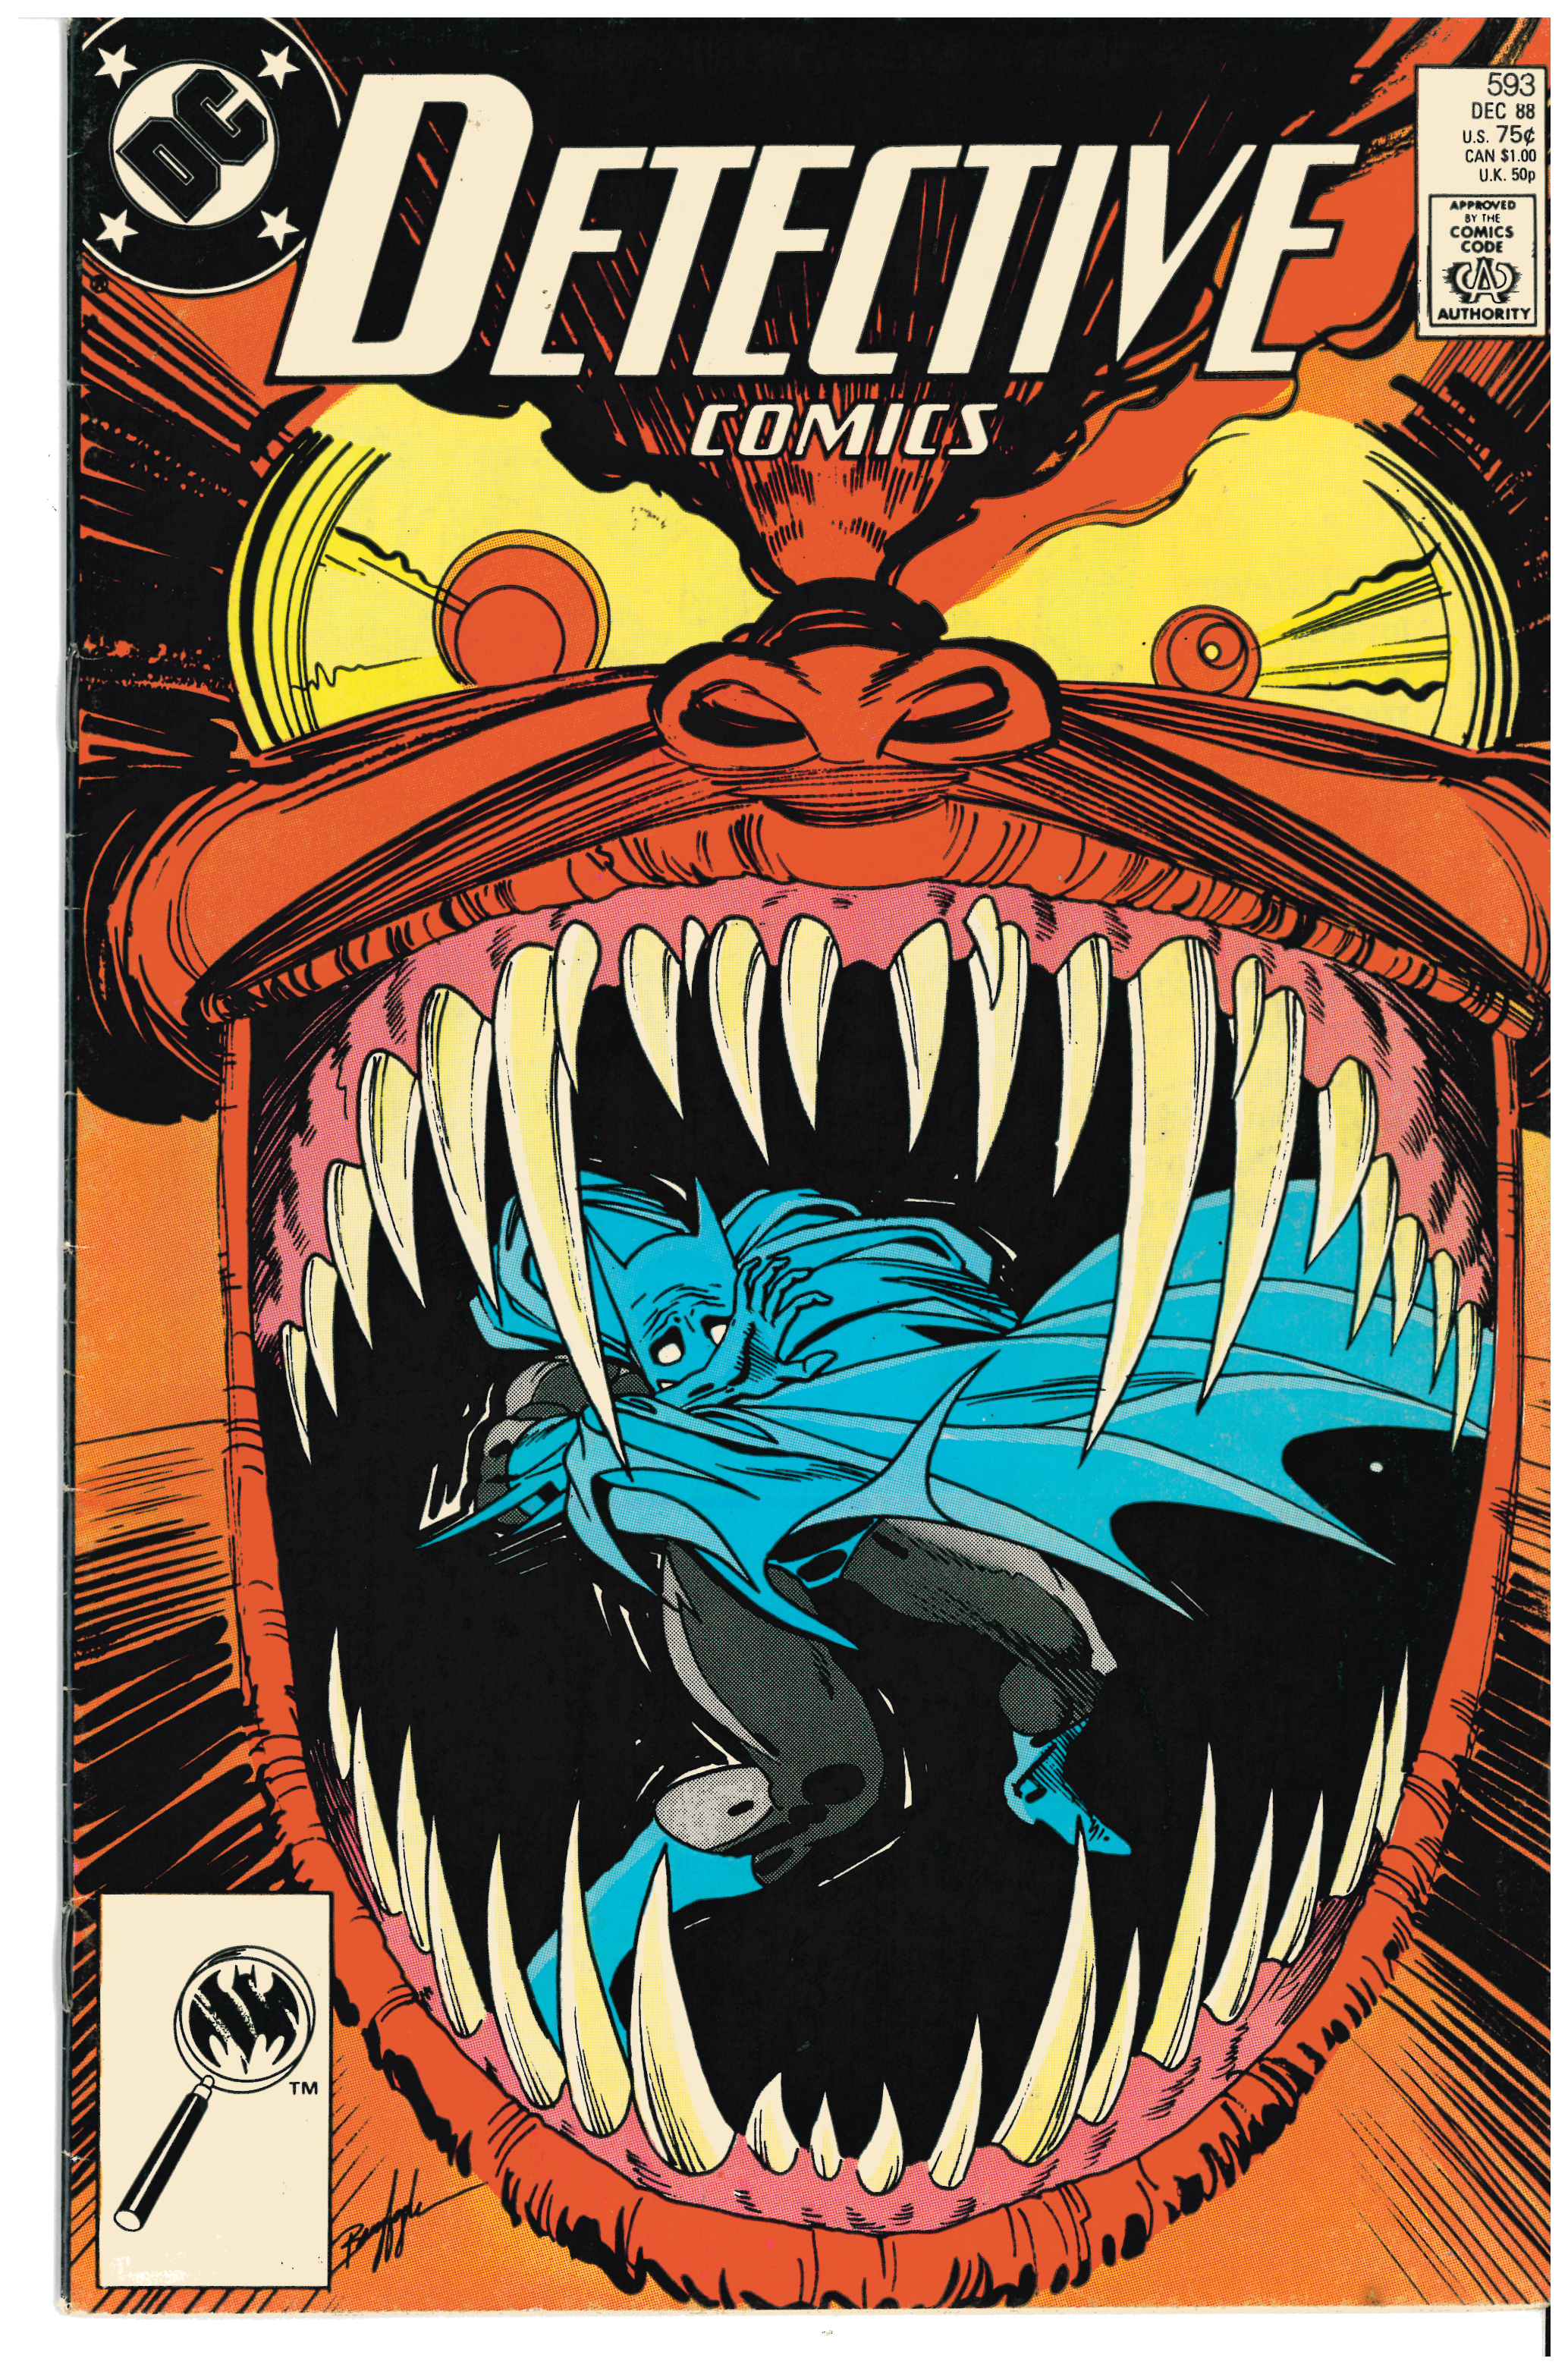 Detective Comics #593